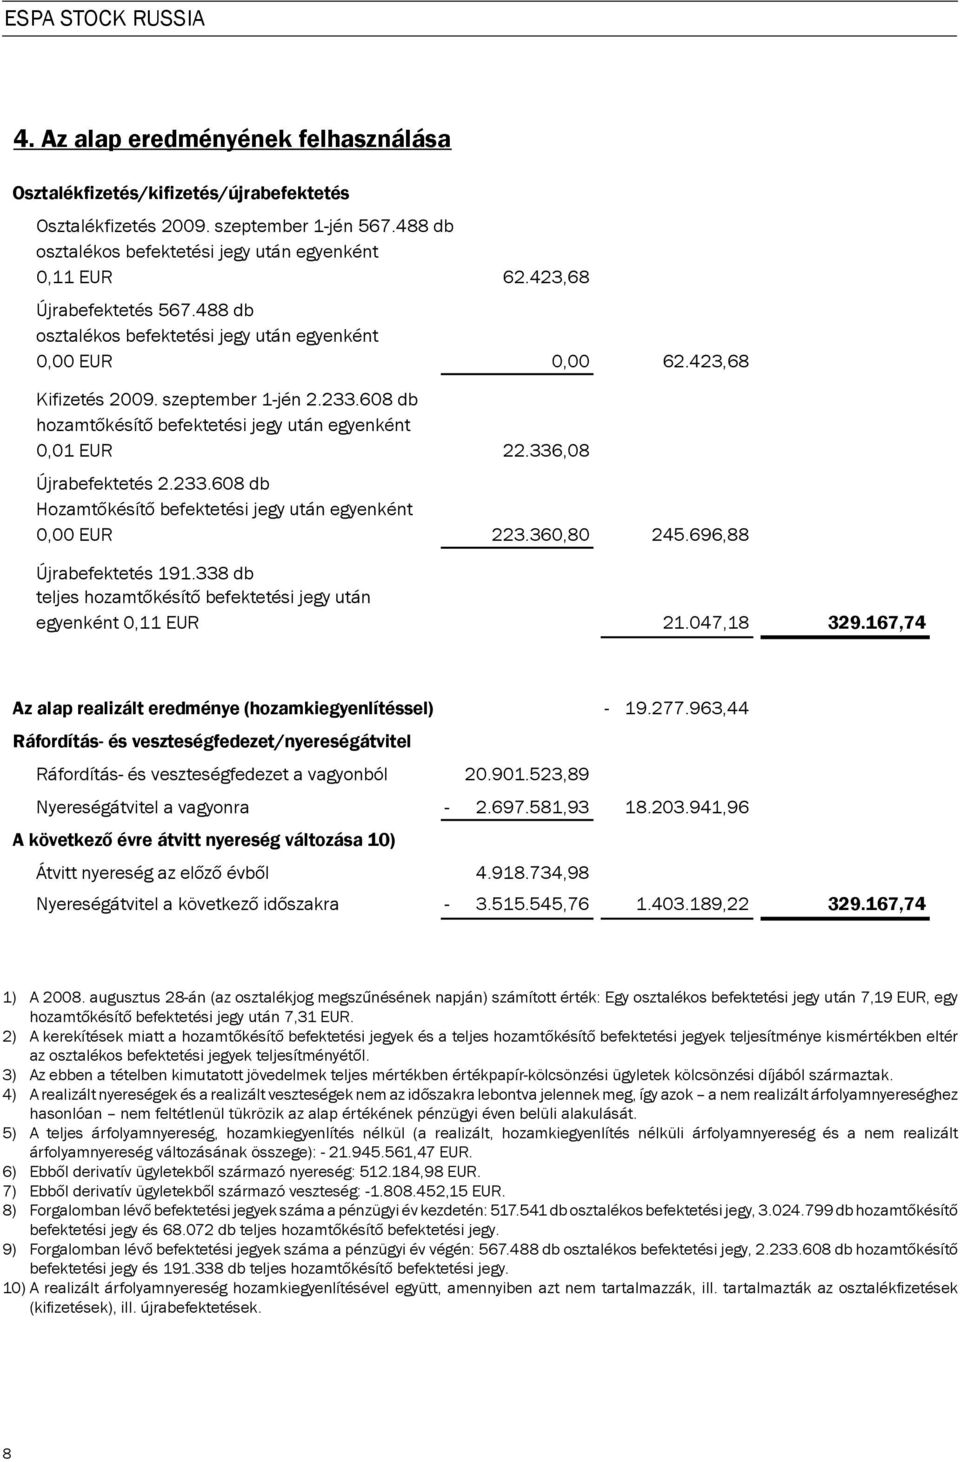 608 db hozamt késít befektetési jegy után egyenként 0,01 EUR Újrabefektetés 2.233.608 db Hozamt késít befektetési jegy után egyenként 0,00 EUR Újrabefektetés 191.